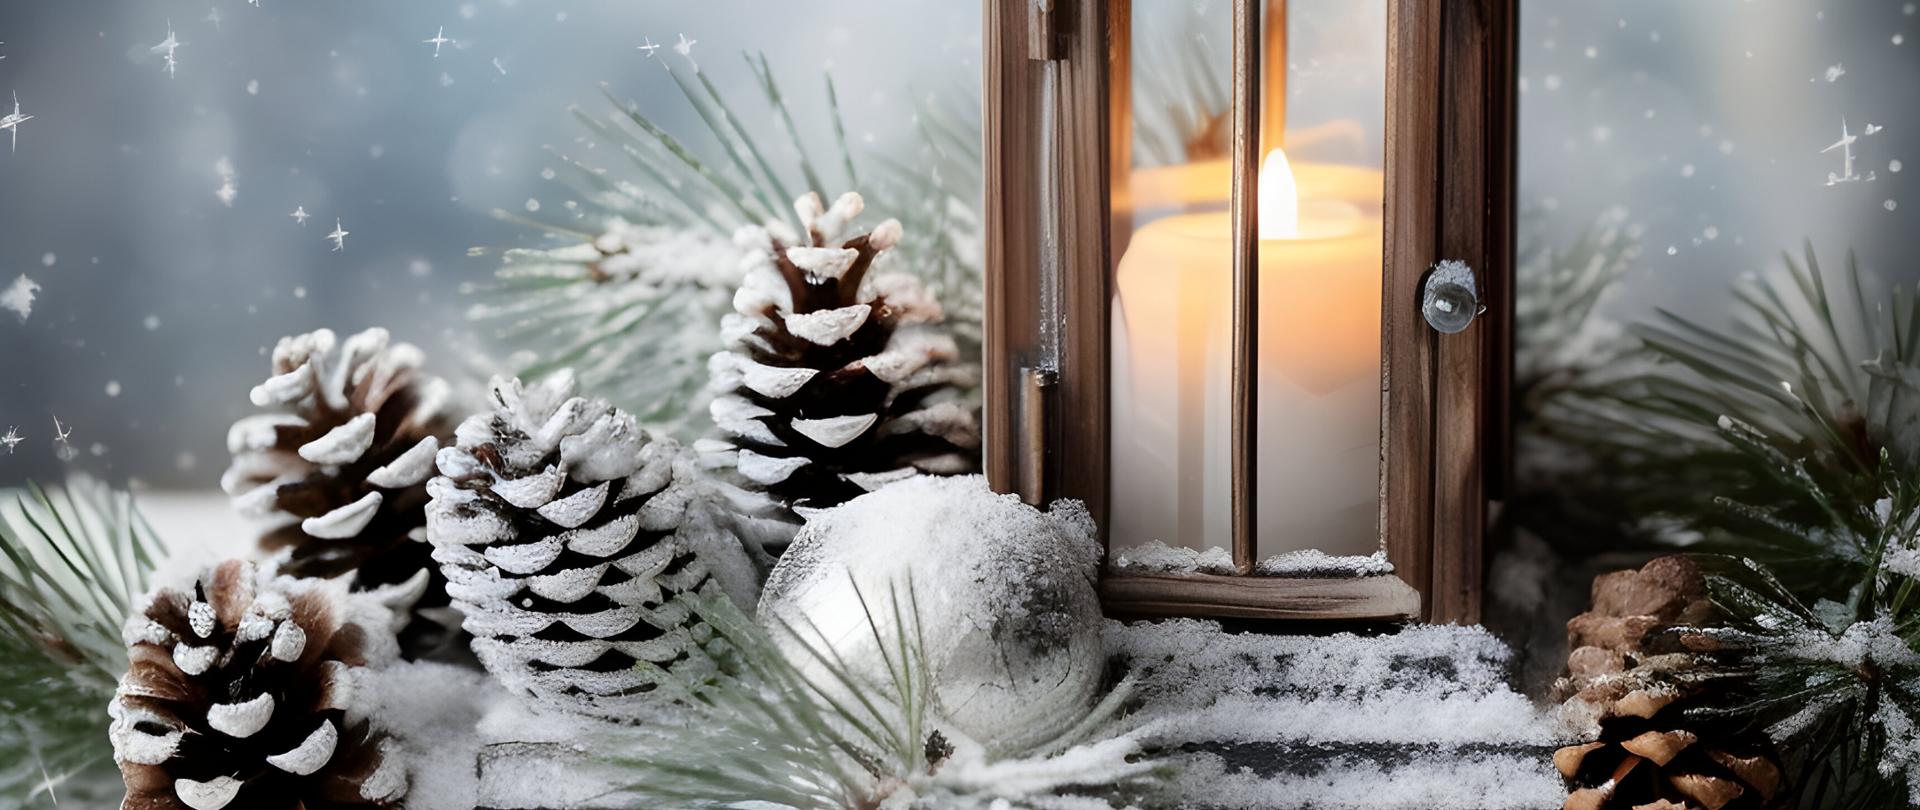 Lampion z płonącą świecą, szyszkami sosnowymi i gałązkami świerku na drewnianej desce pokrytej śniegiem, abstrakcyjne tło z płatkami śniegu i mieniącym się światłem. 